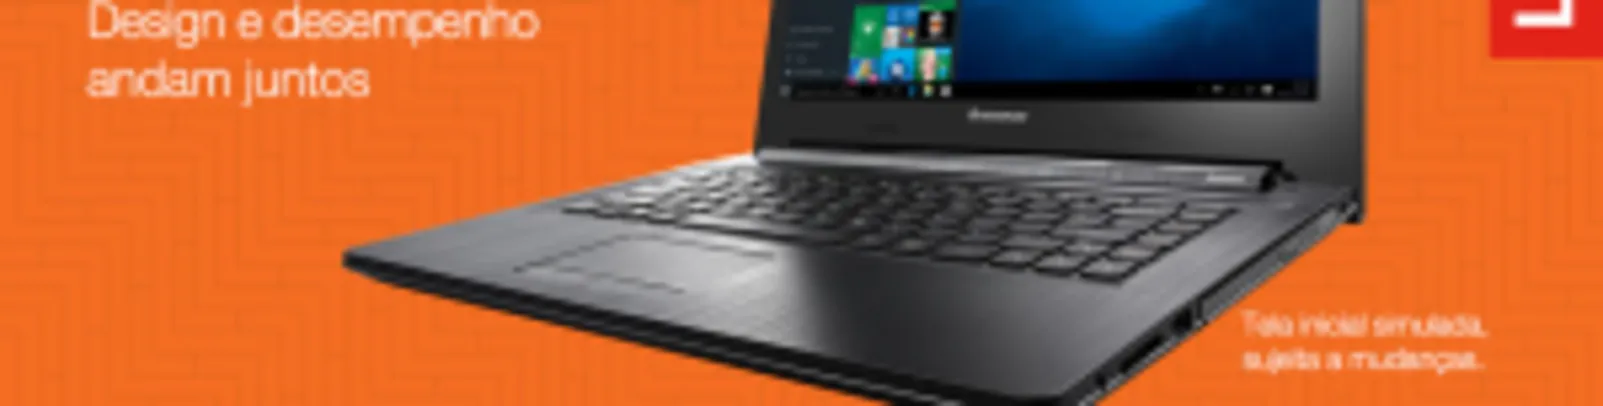 [EXTRA] Notebook Lenovo G40-80 - R$1709,10